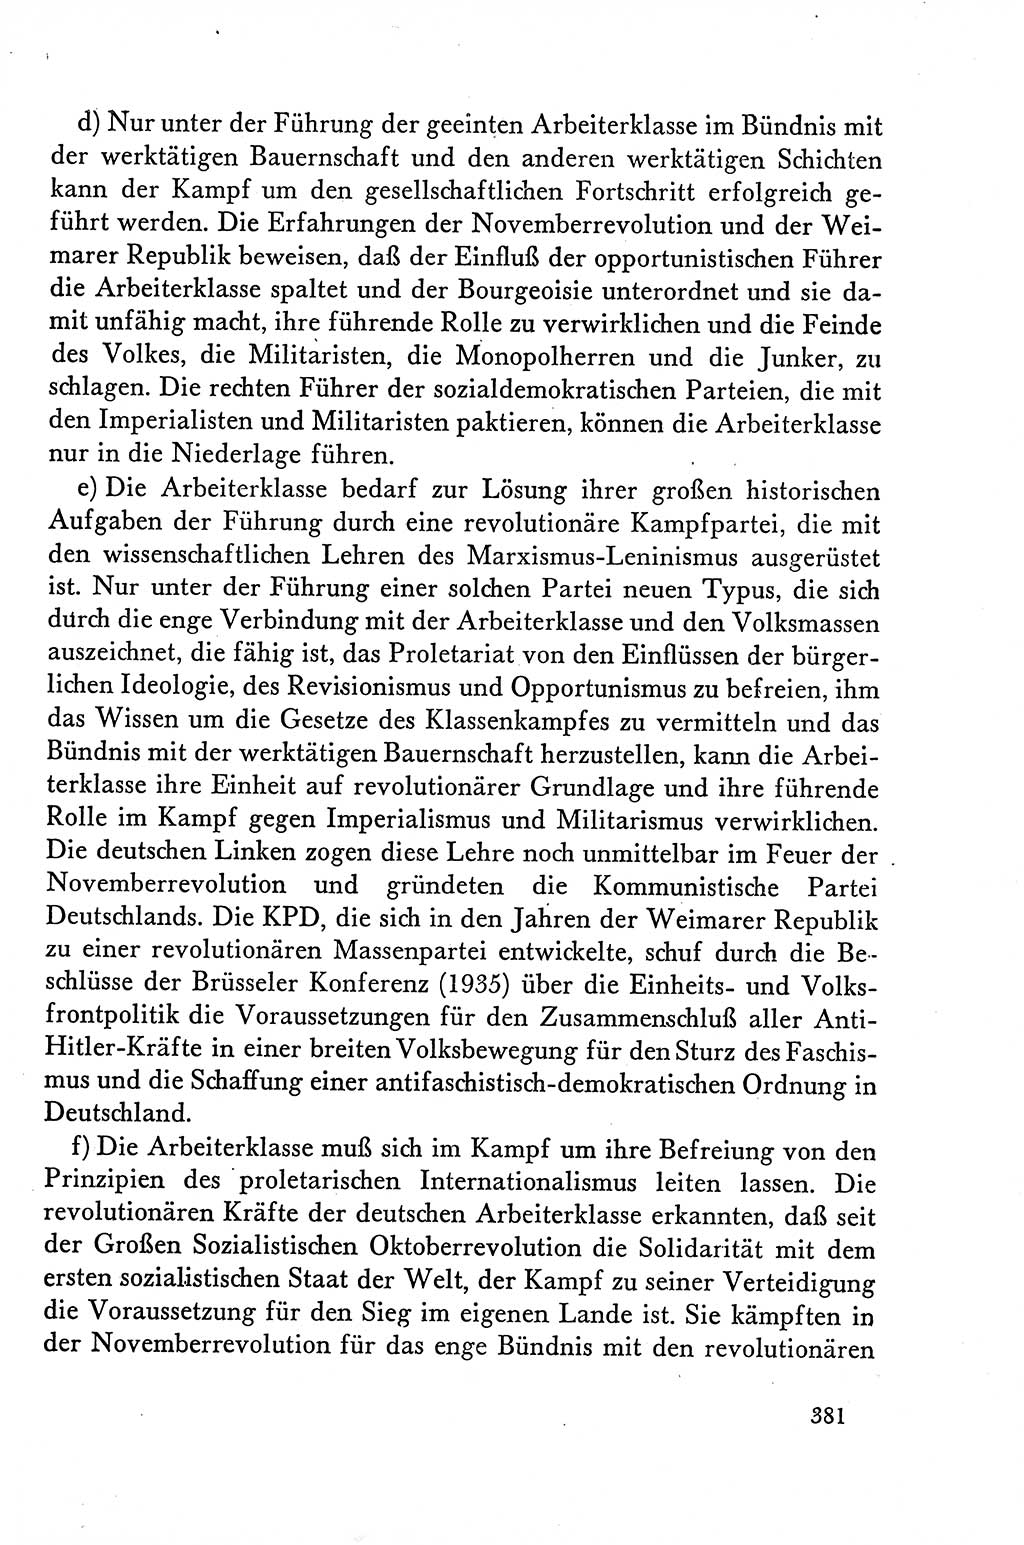 Dokumente der Sozialistischen Einheitspartei Deutschlands (SED) [Deutsche Demokratische Republik (DDR)] 1958-1959, Seite 381 (Dok. SED DDR 1958-1959, S. 381)